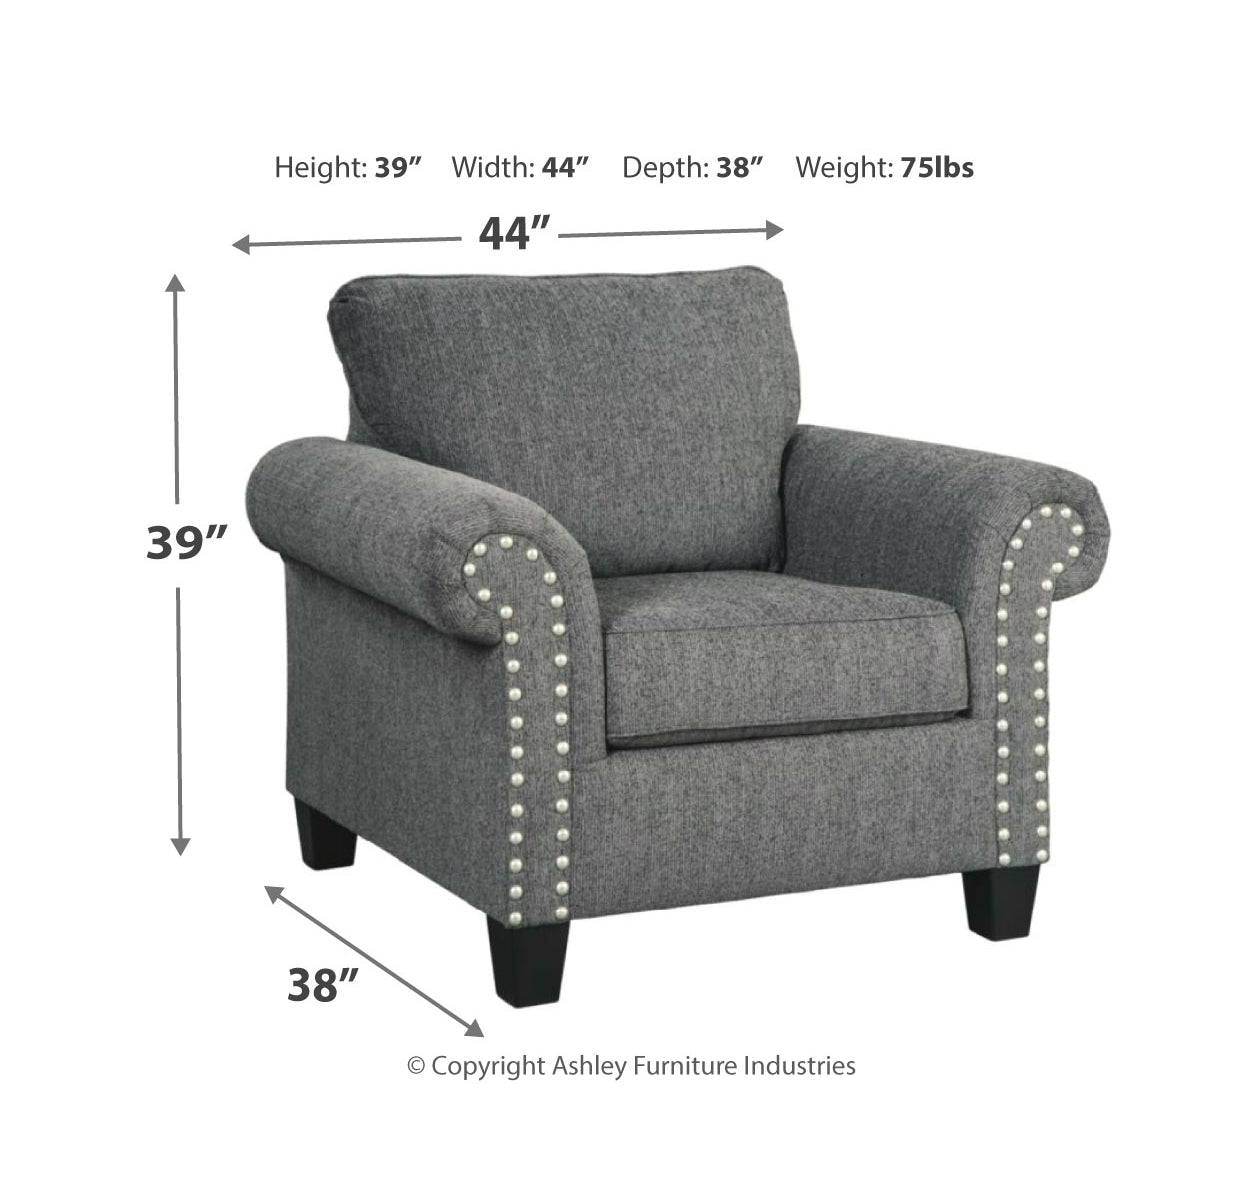 Agleno Sofa and Chair